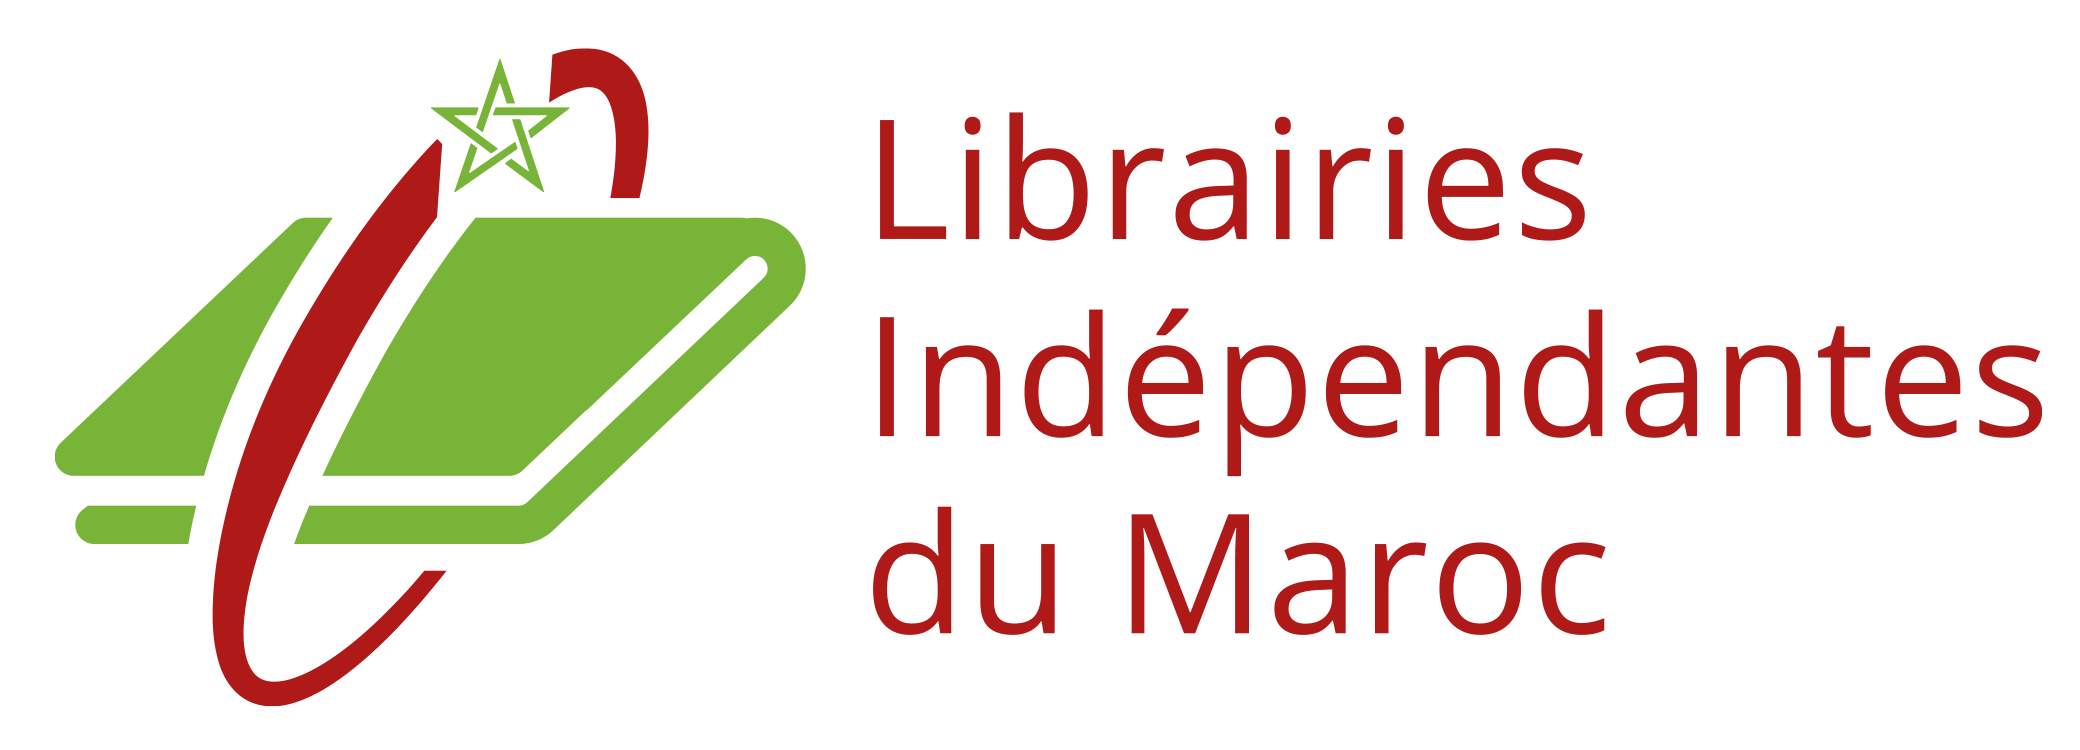 Librairies du Maroc